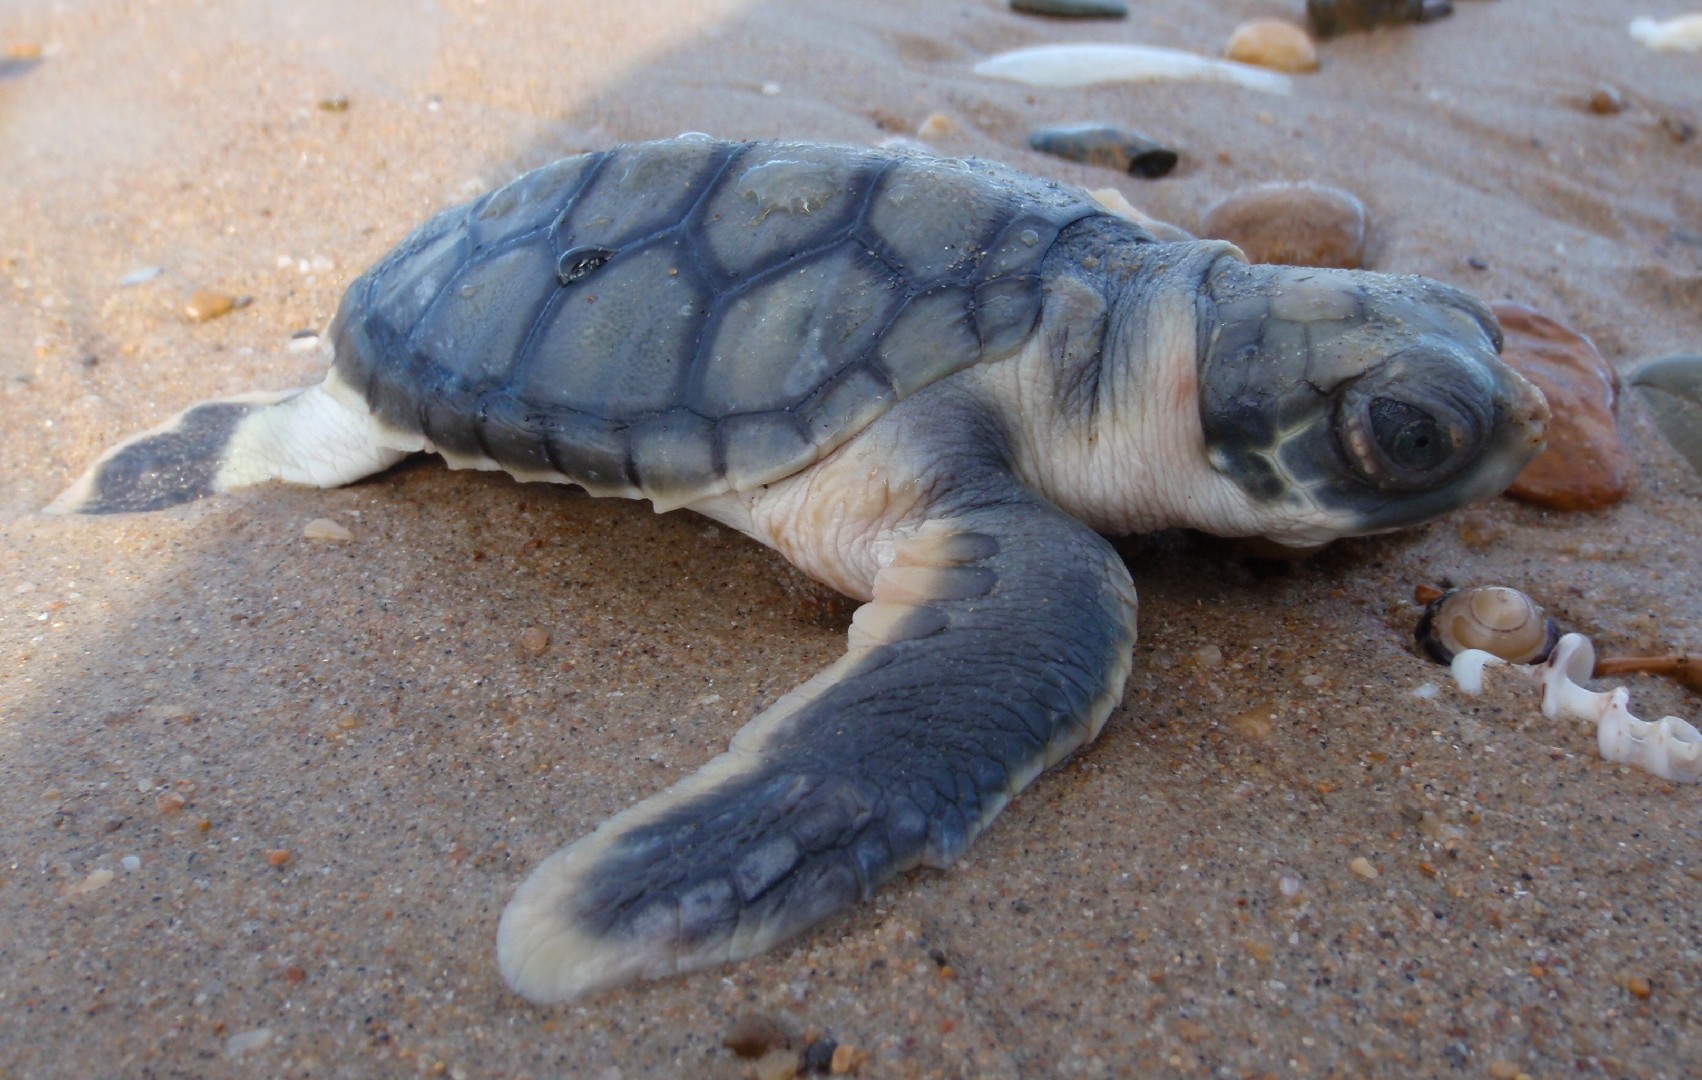 Flatback turtles (Natator)